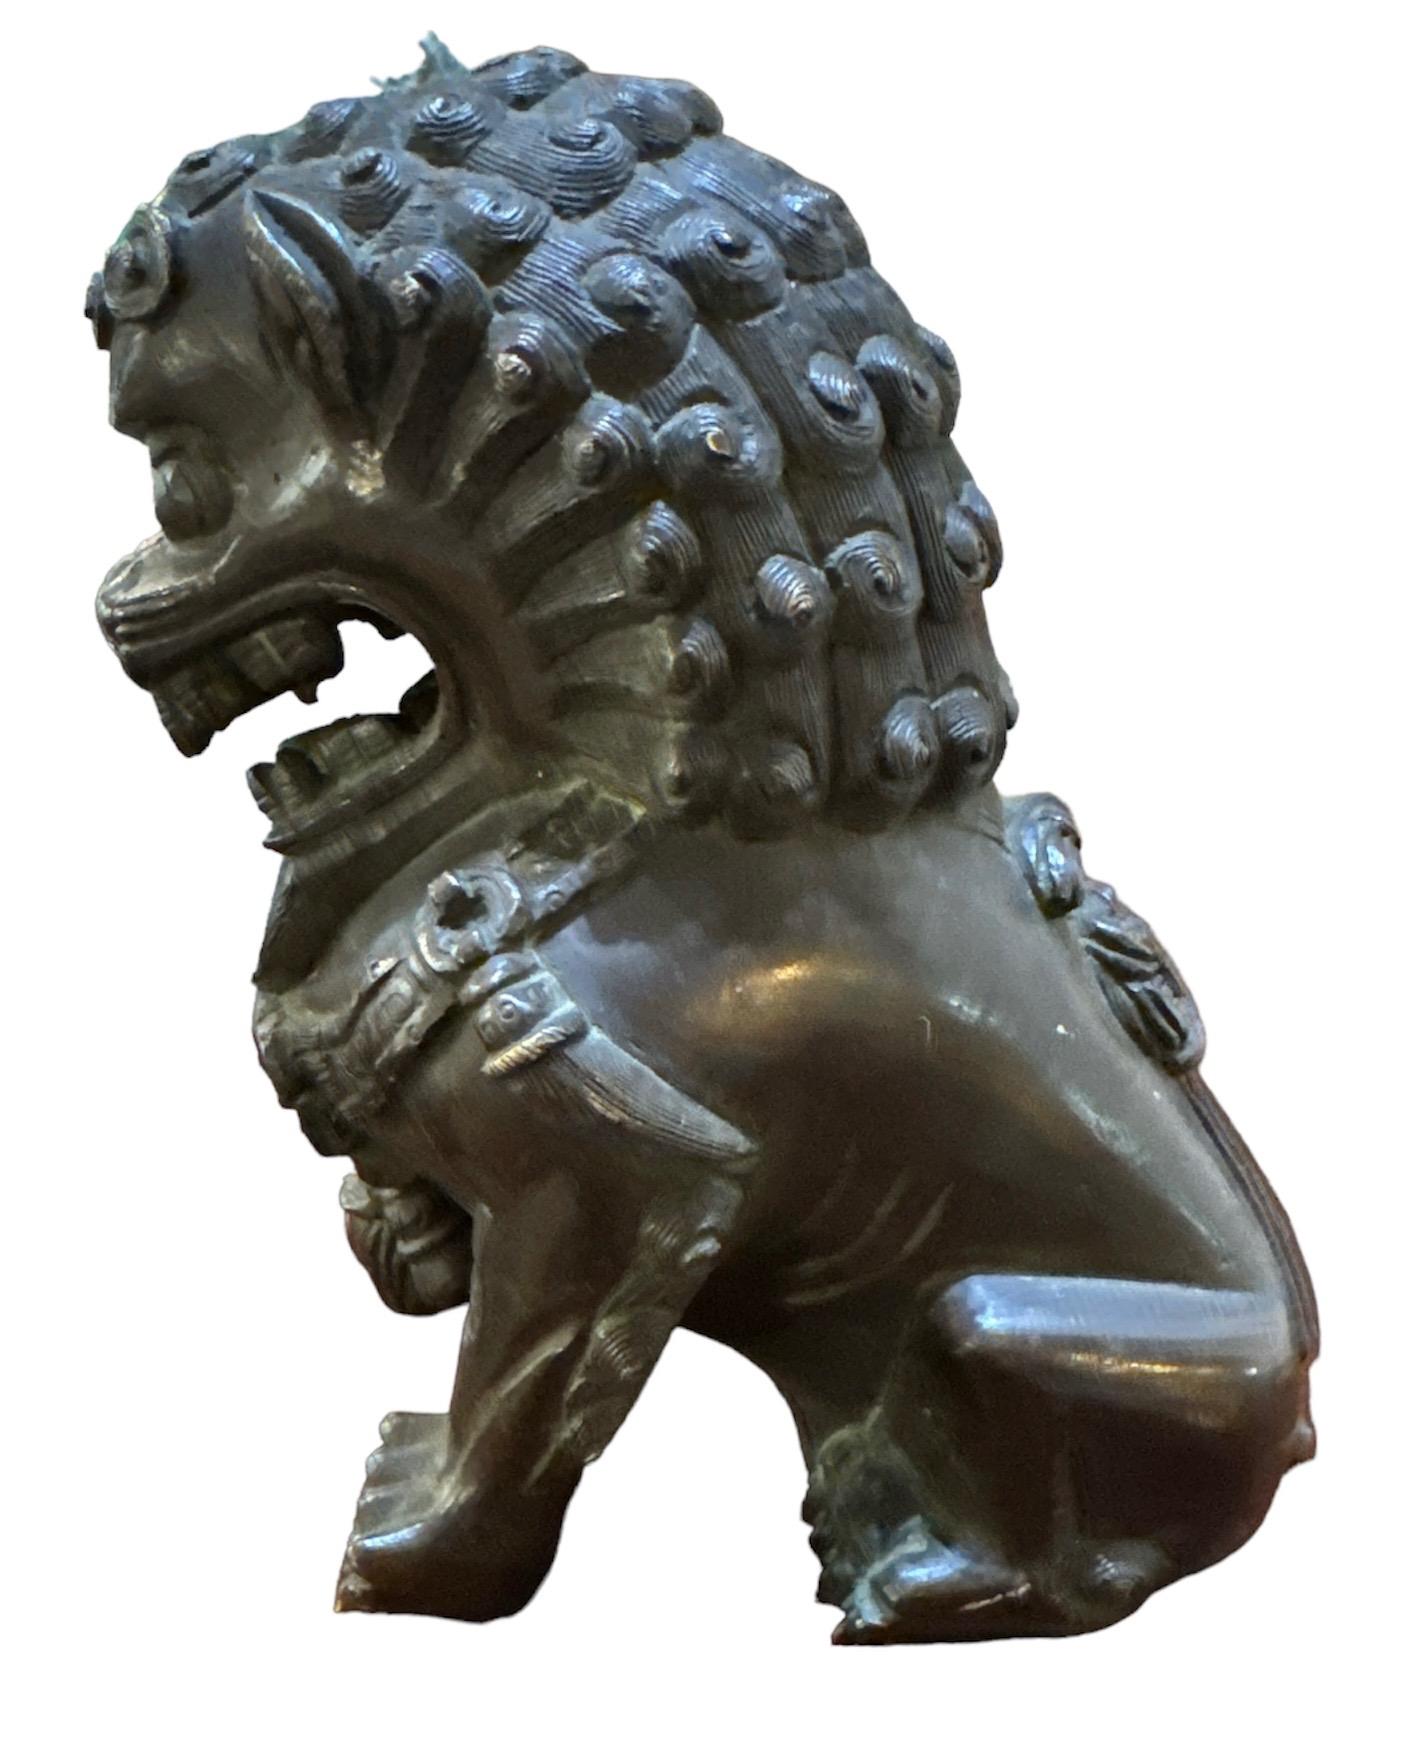 Antiker Bronze Foo Dog. Wunderbares Alter und Patina vom Gebrauch. Maße 5,5h x 5,5w x 3,5w
